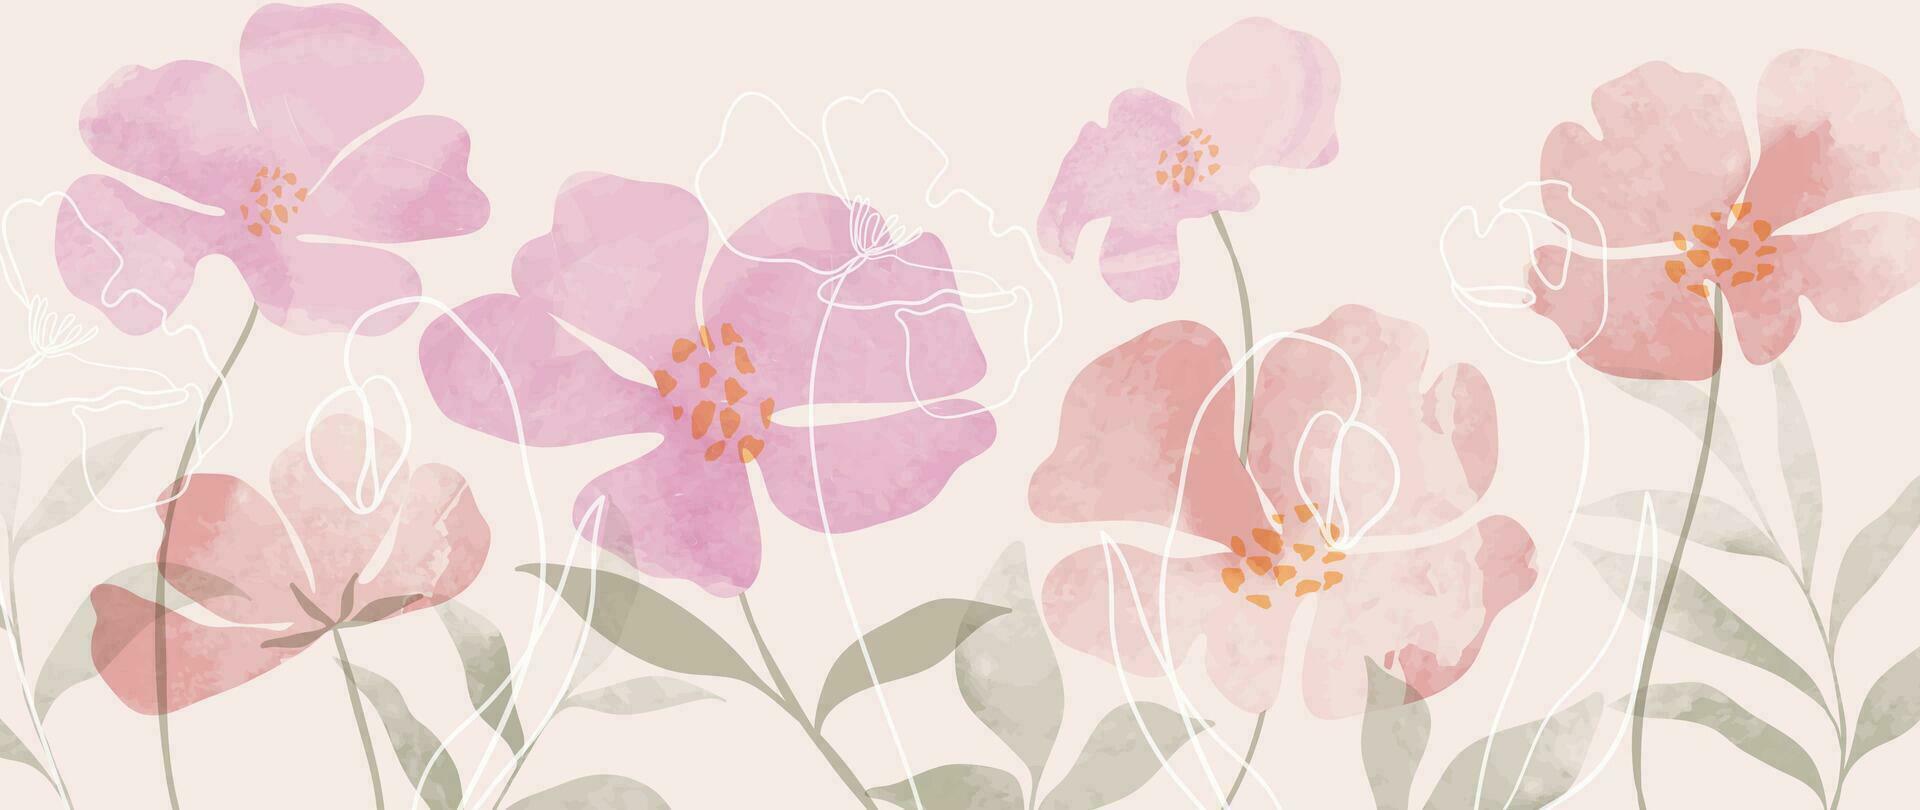 abstrakt blommig konst bakgrund vektor. hand målad vattenfärg botanisk vår blommor textur bakgrund. konst design illustration för tapet, affisch, baner kort, skriva ut, webb och förpackning vektor